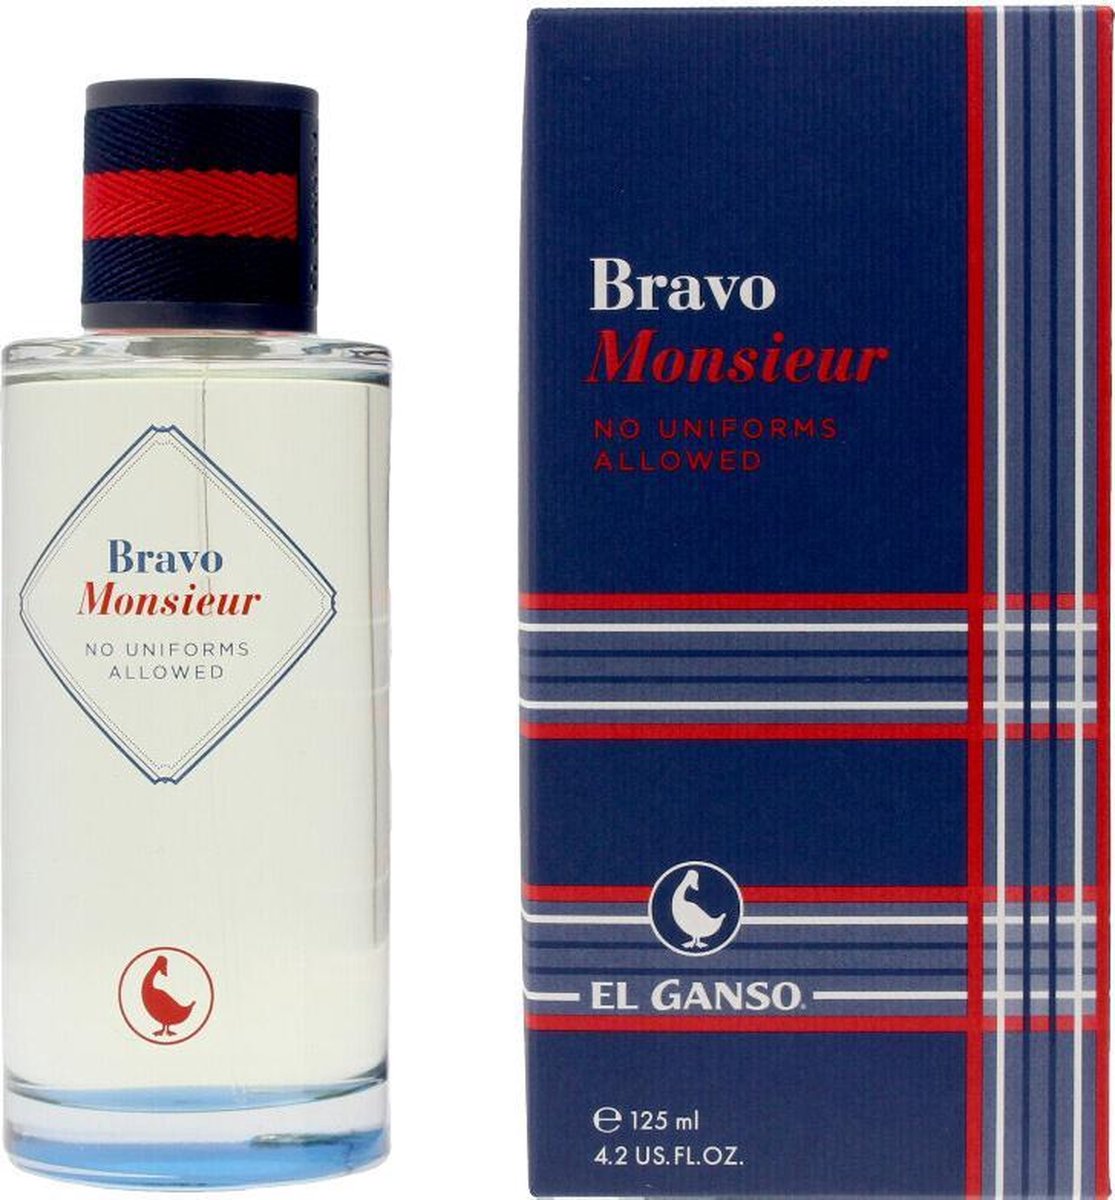 Bravo Monsieur by El Ganso 125 ml -